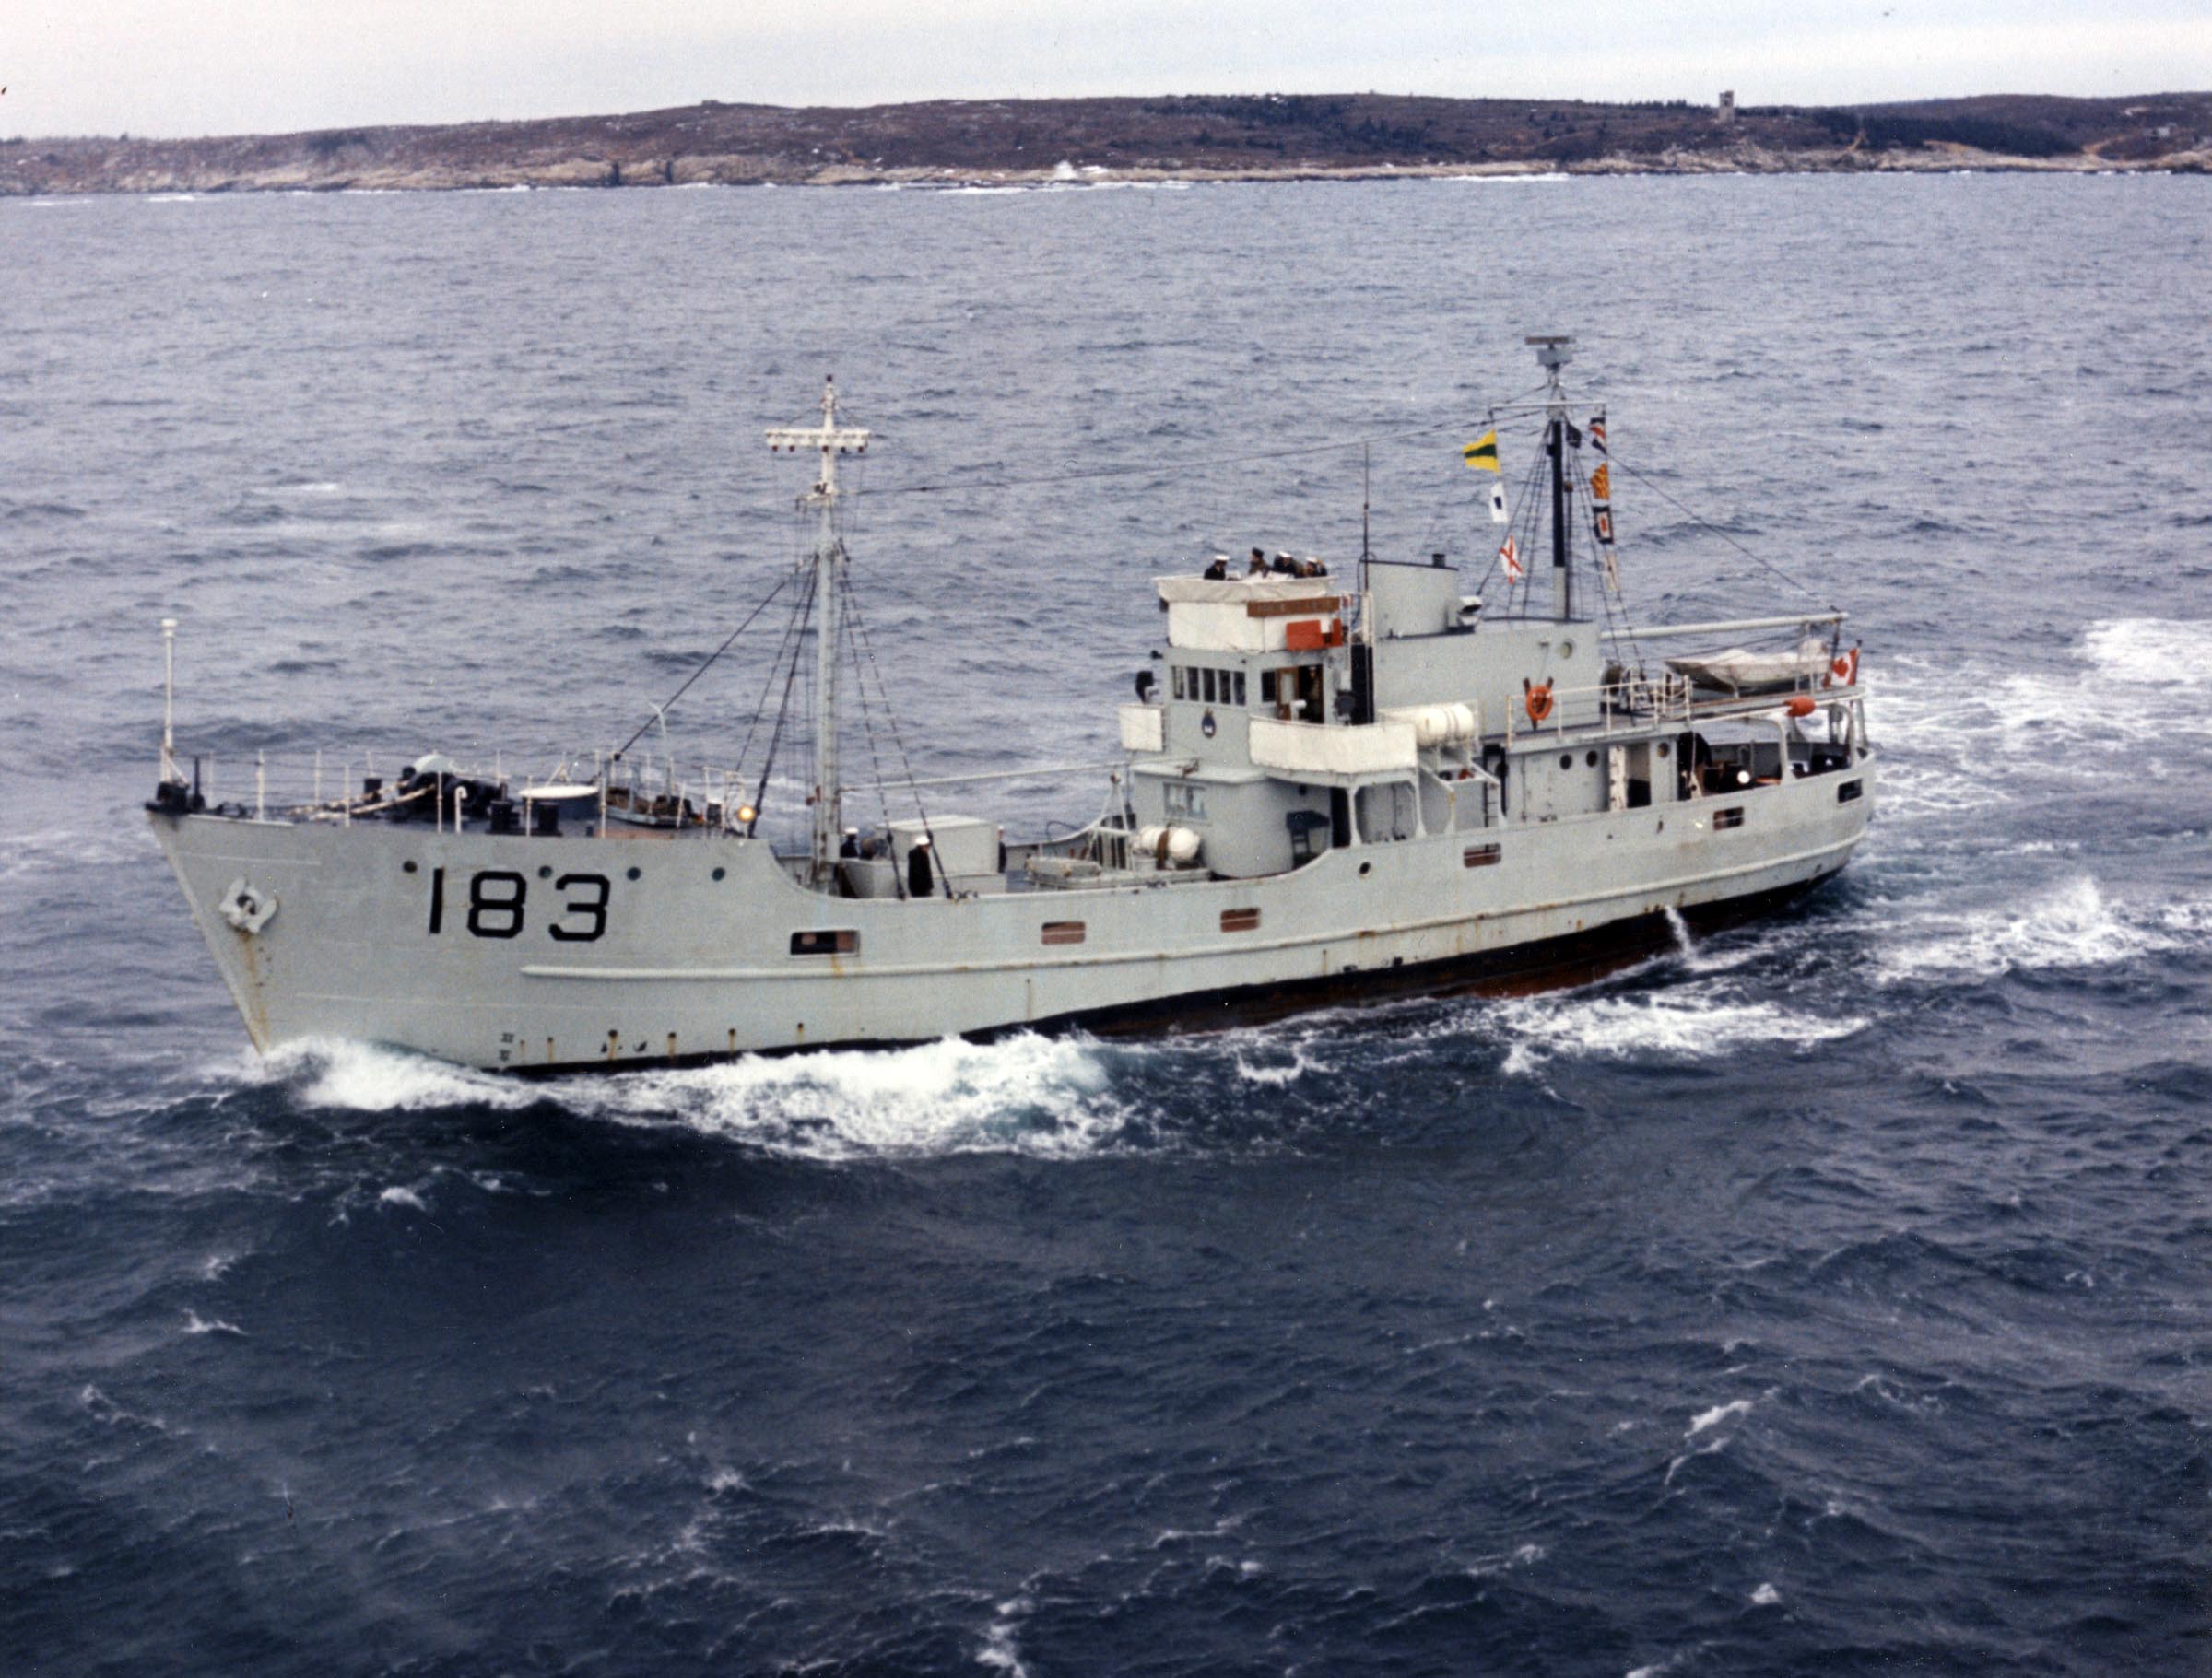 HMCS PORTE ST. LOUIS